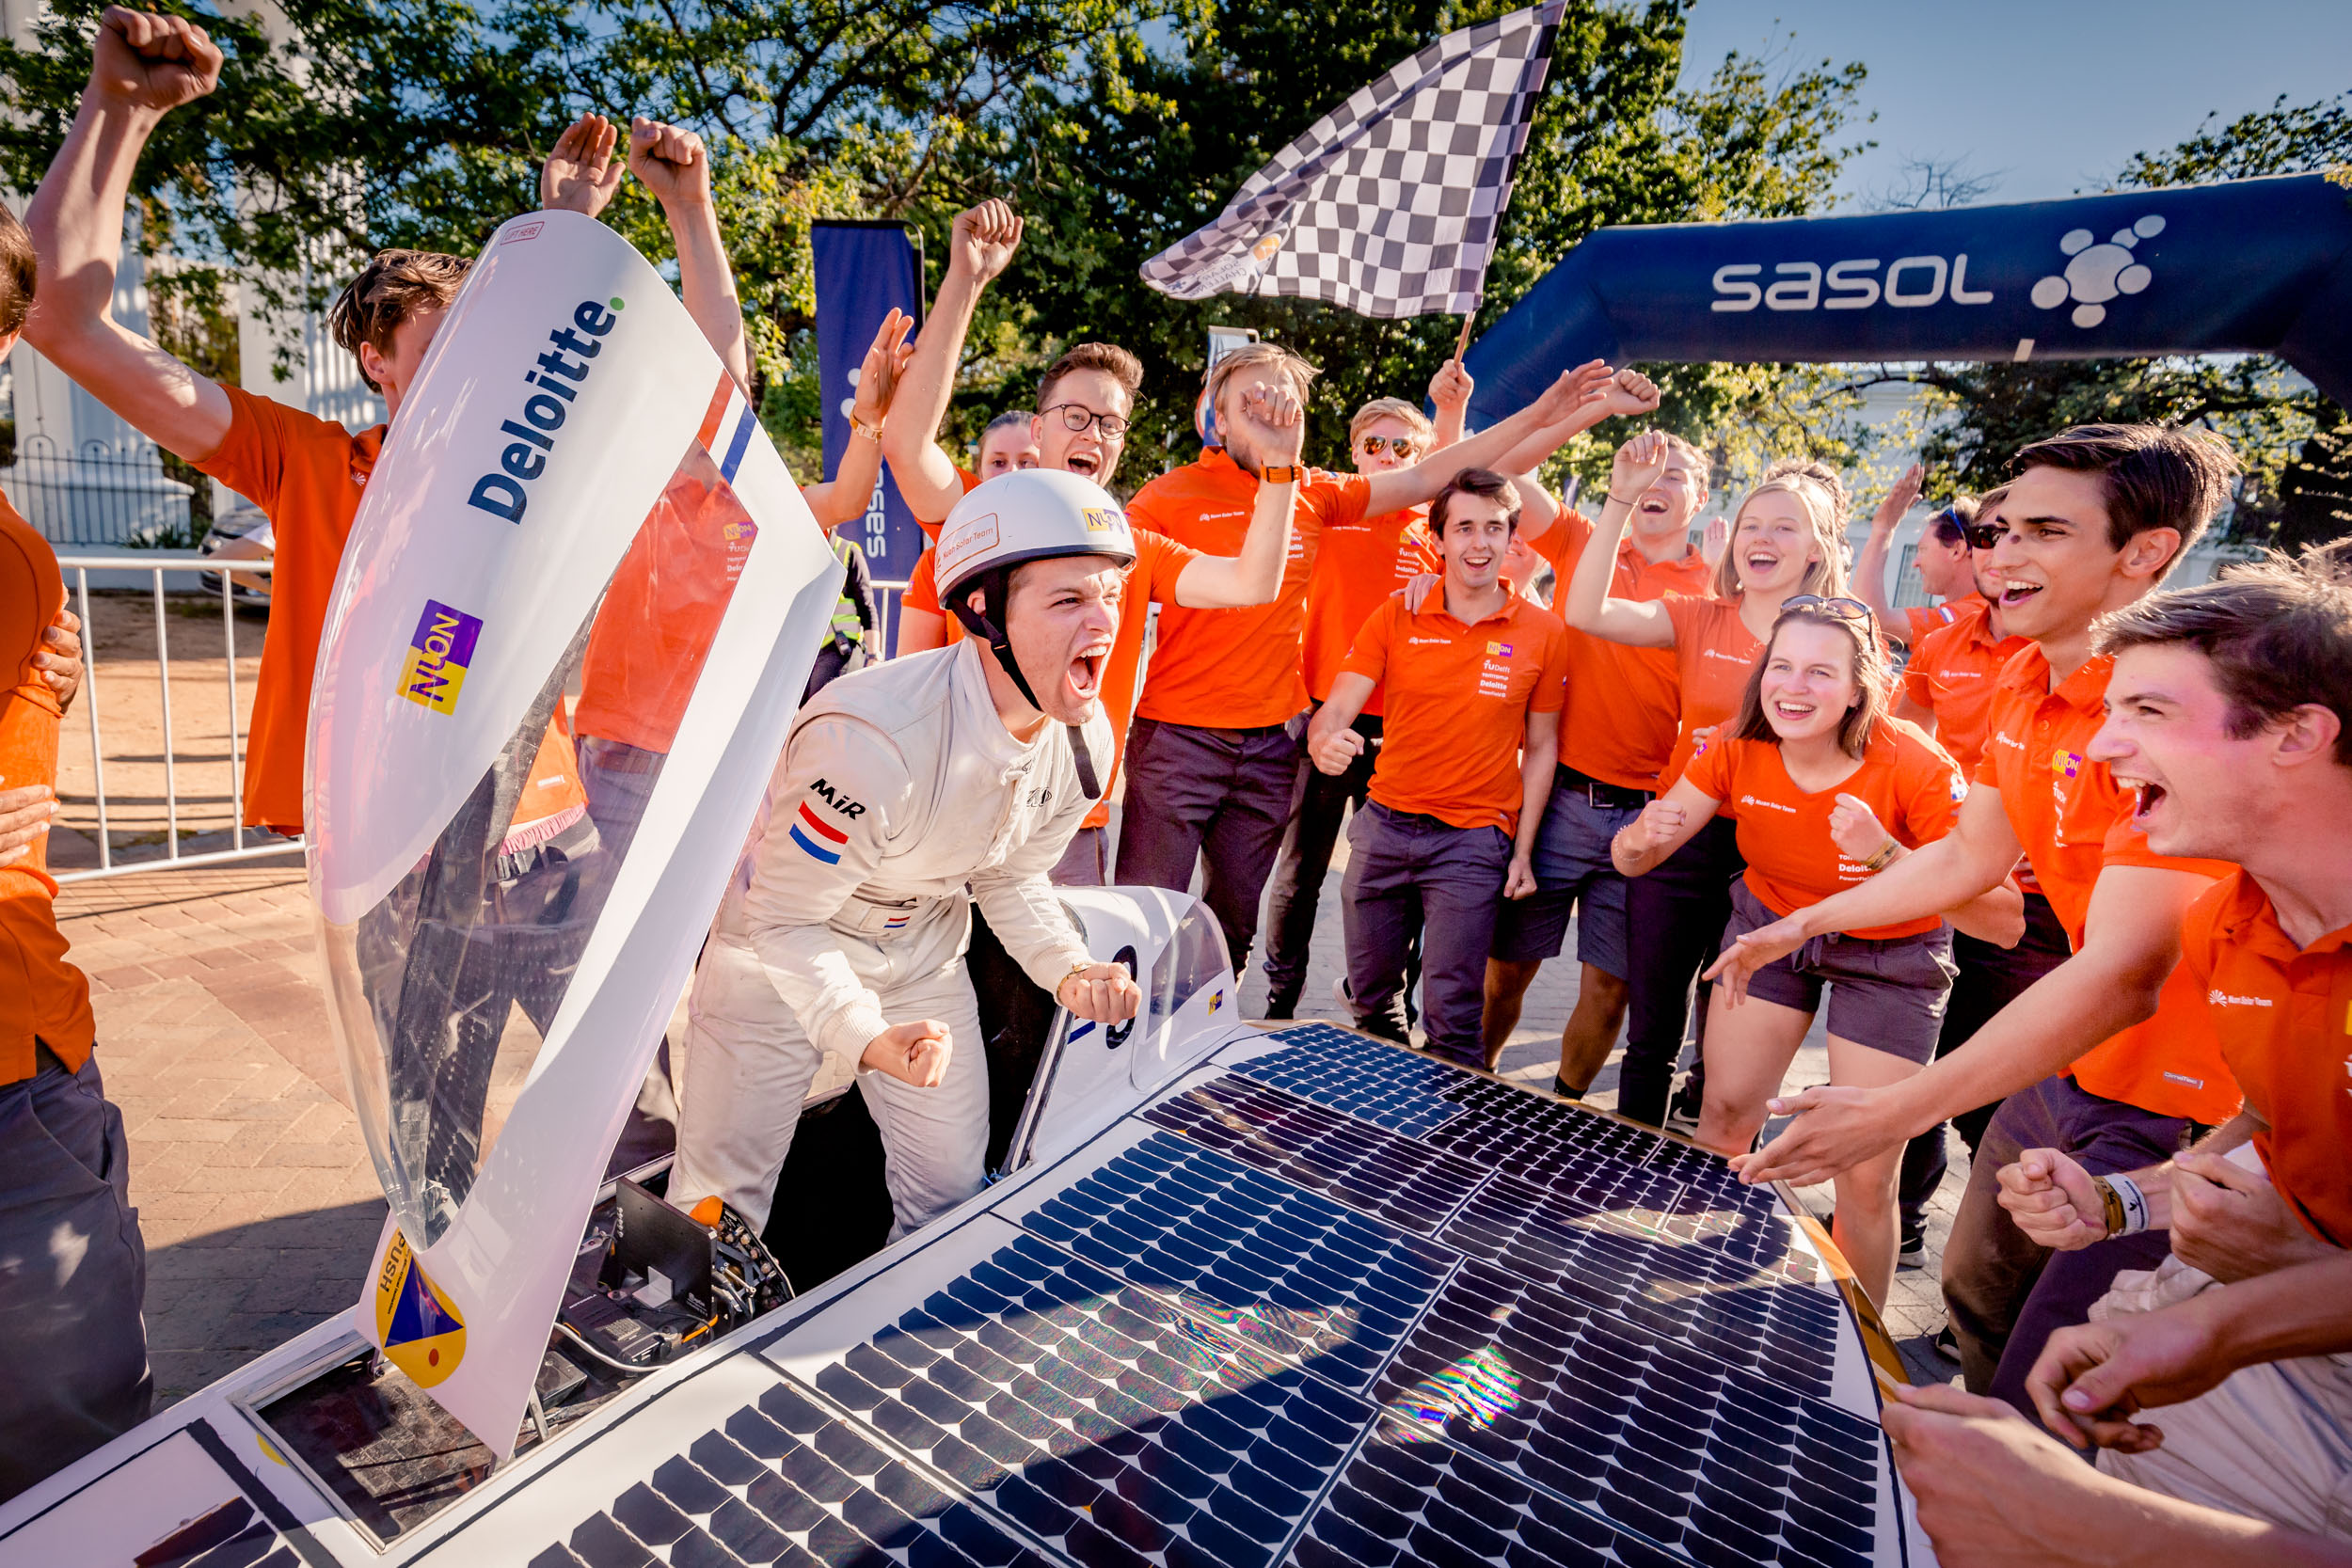 Nuna9s gaat als eerste over de finish van de Sasol Solar Challenge